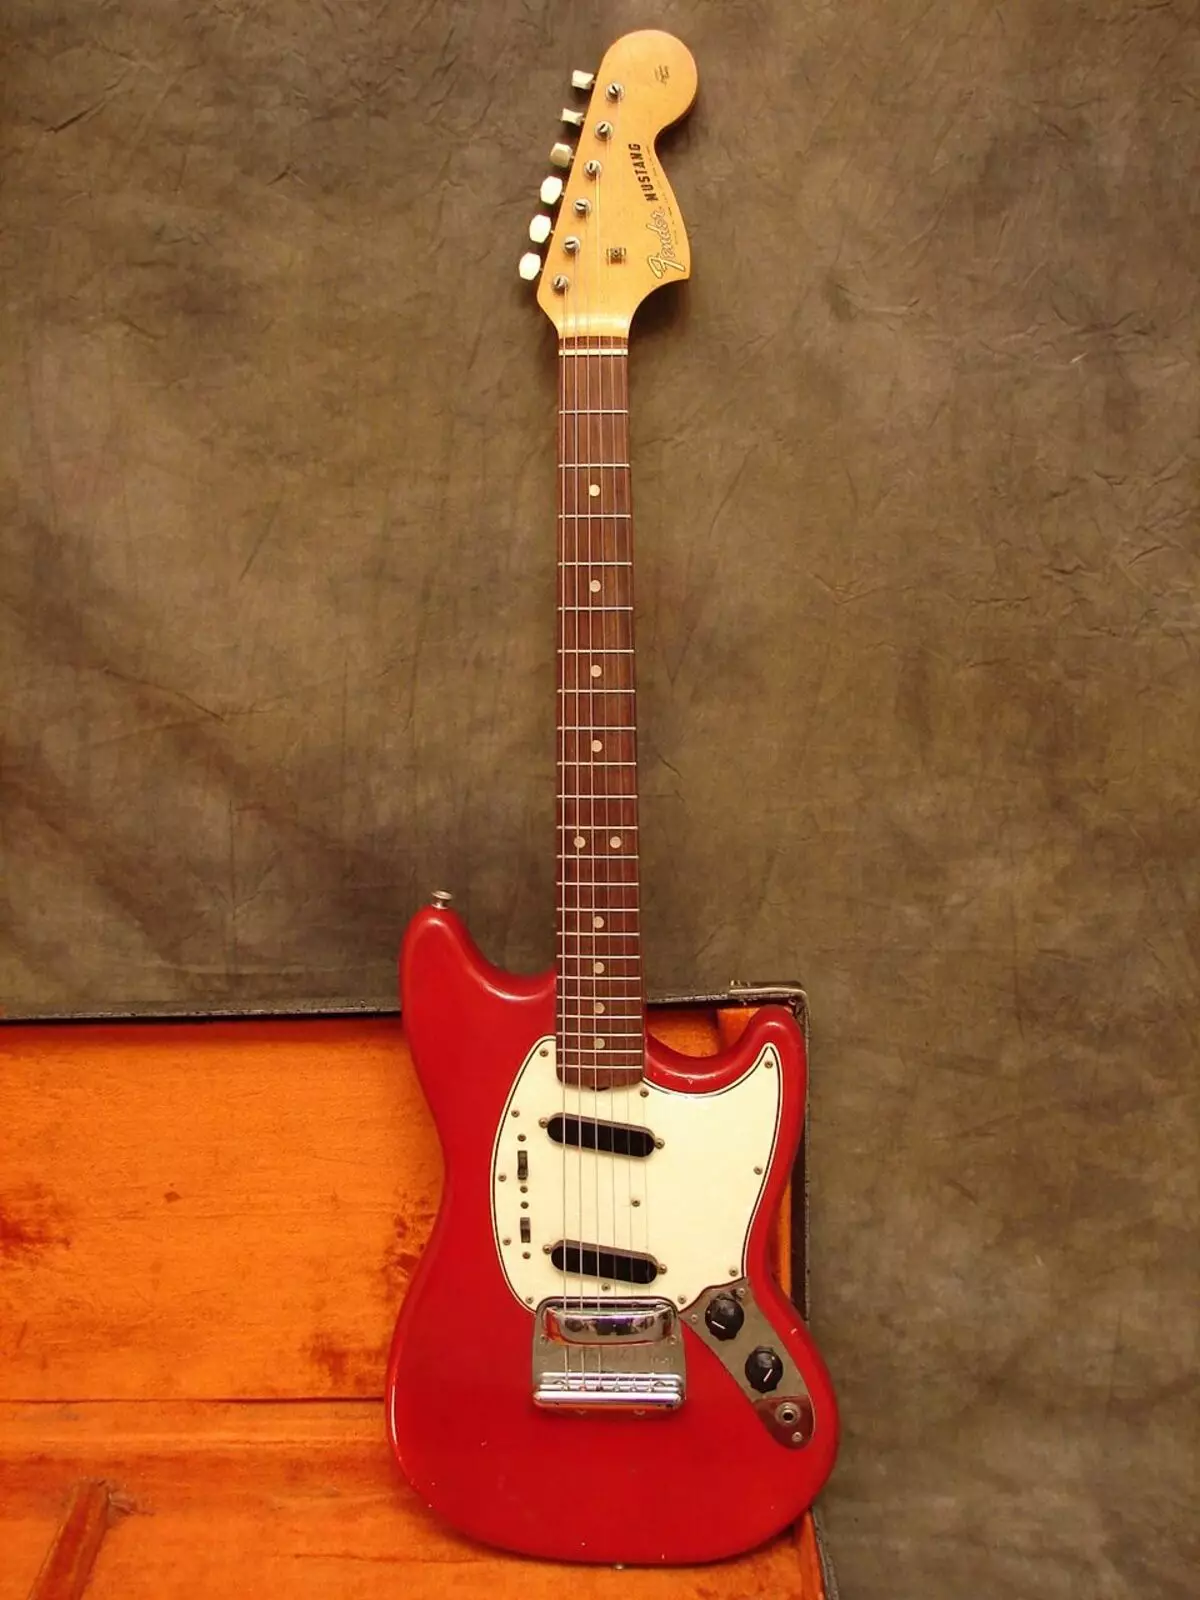 Guitars Fender: kitarat elektrike dhe elektro-akustike, kitarat bas dhe klasik, Mustang dhe CC-60SCE, modele të tjera, rast zgjedhjesh dhe komente 26262_13